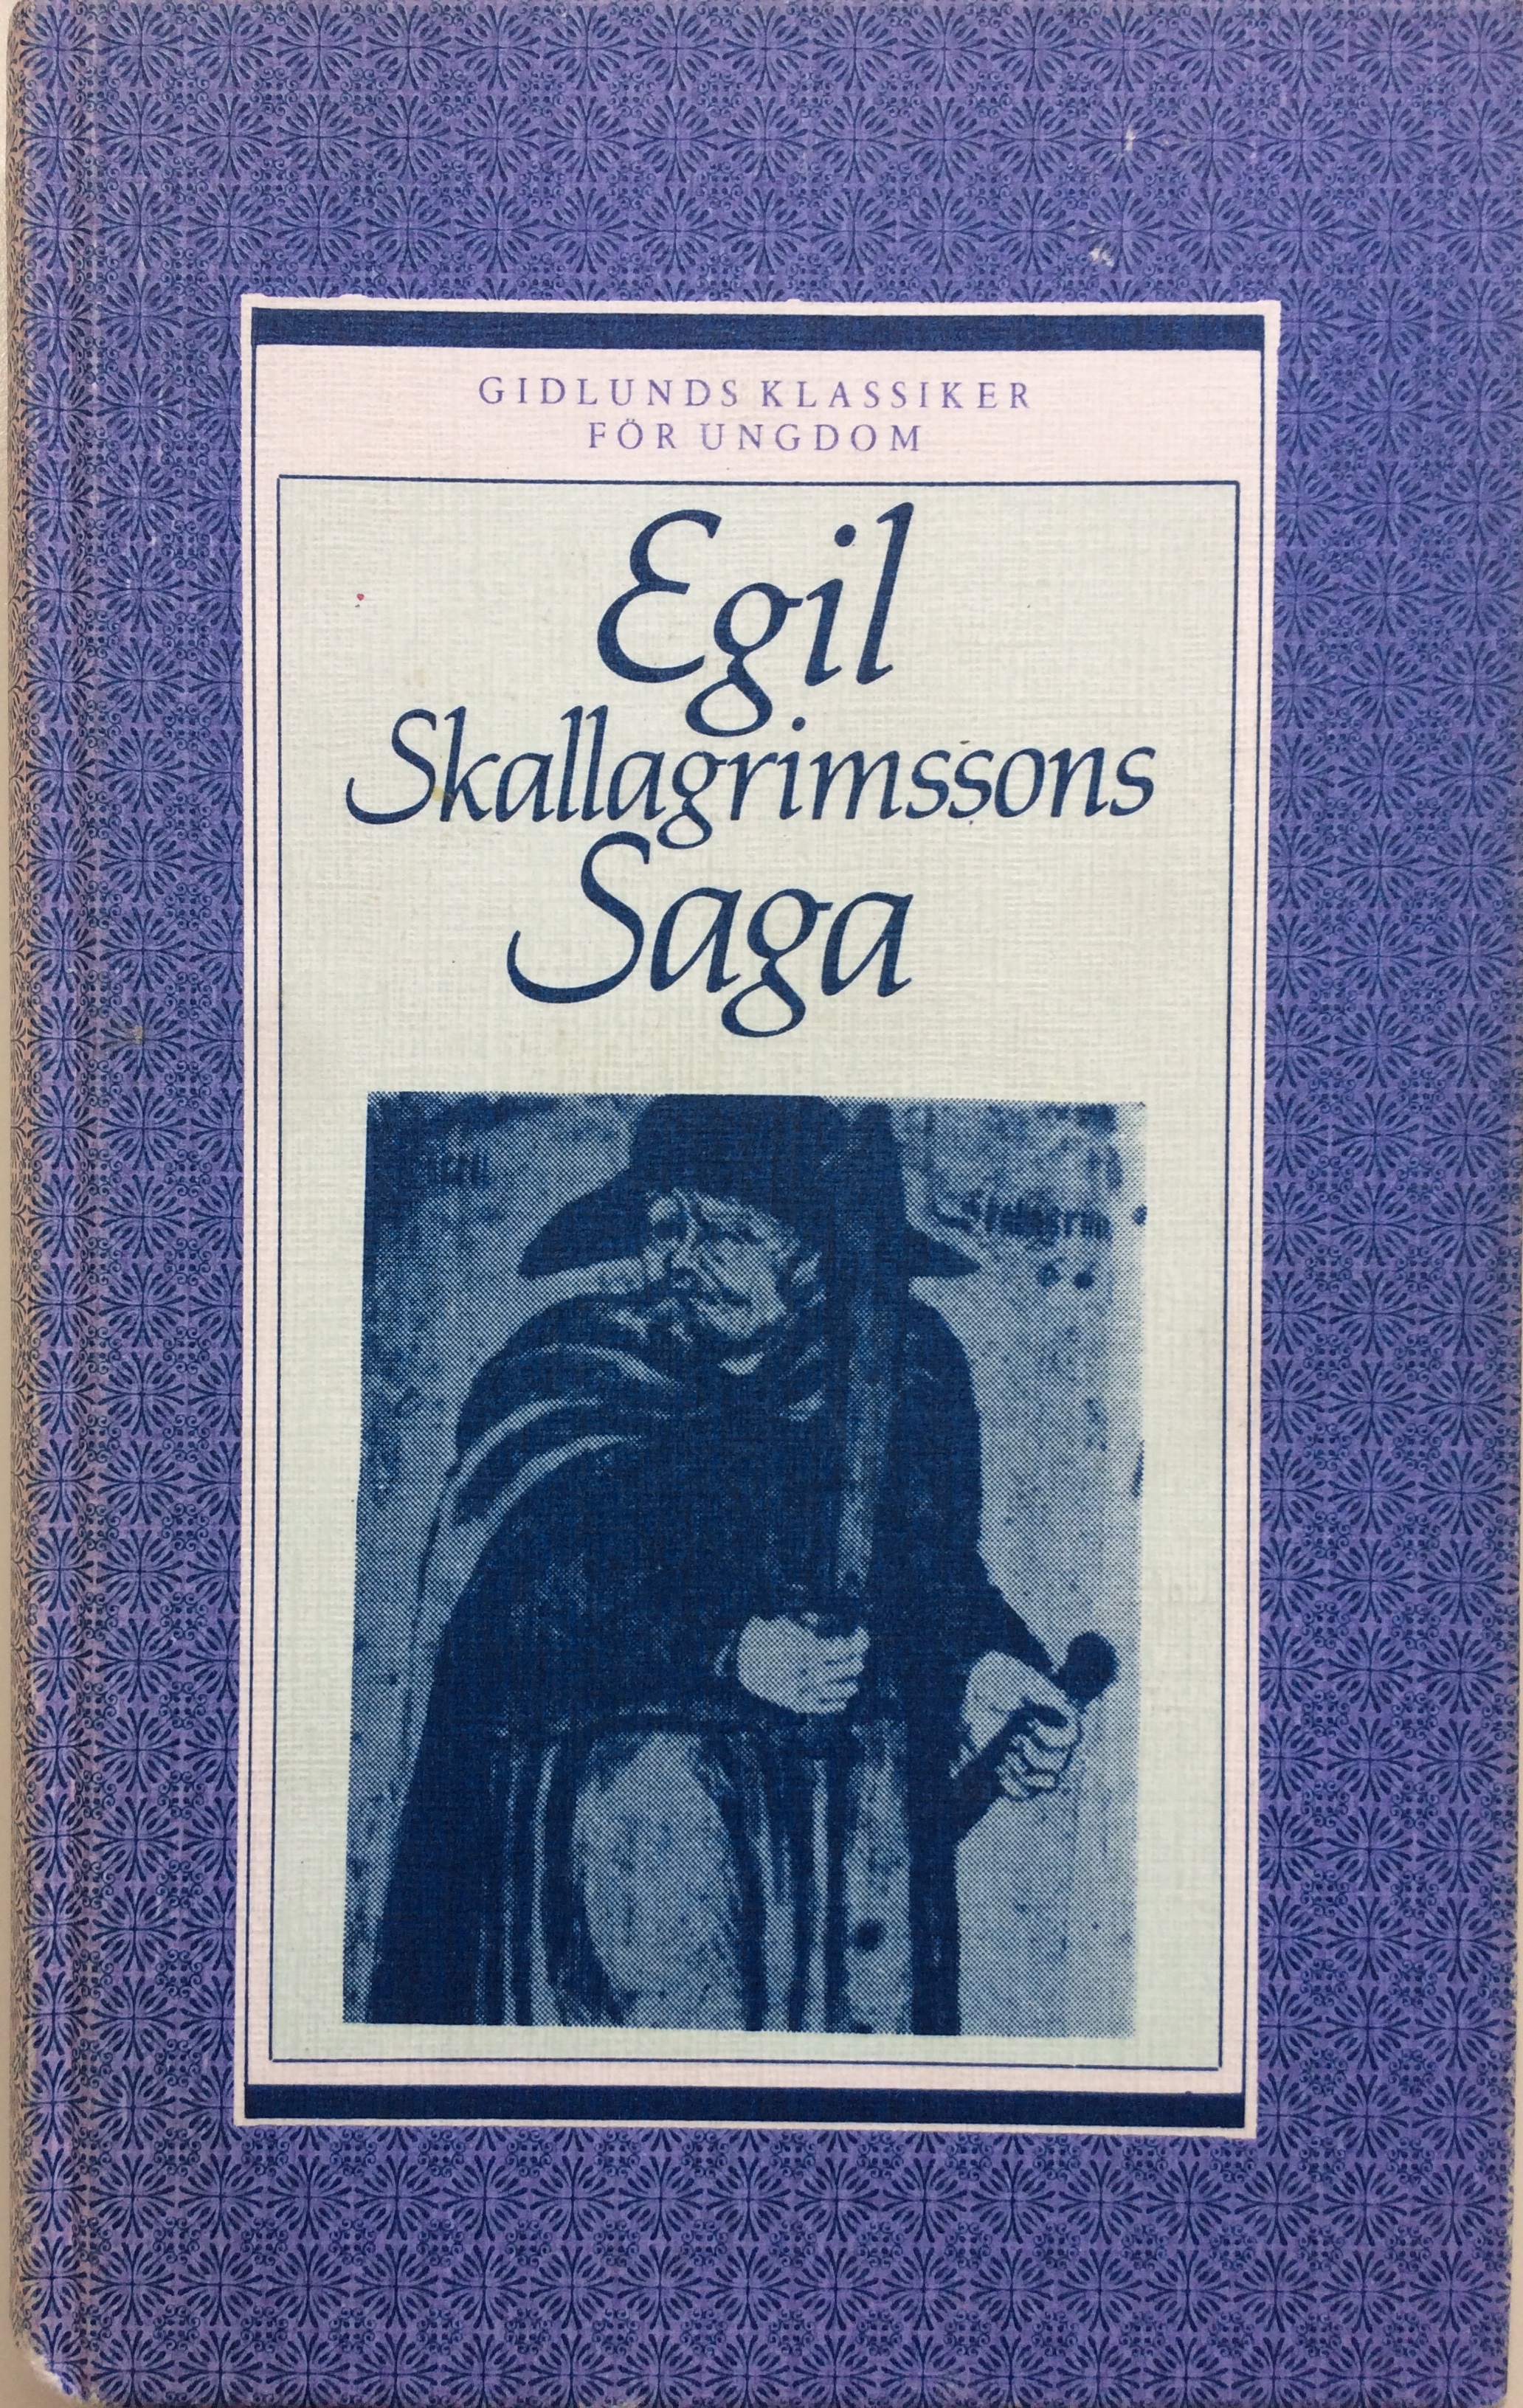 Alving, Hjalmar (övers.) "Egil Skallagrimssons saga" KARTONNAGE